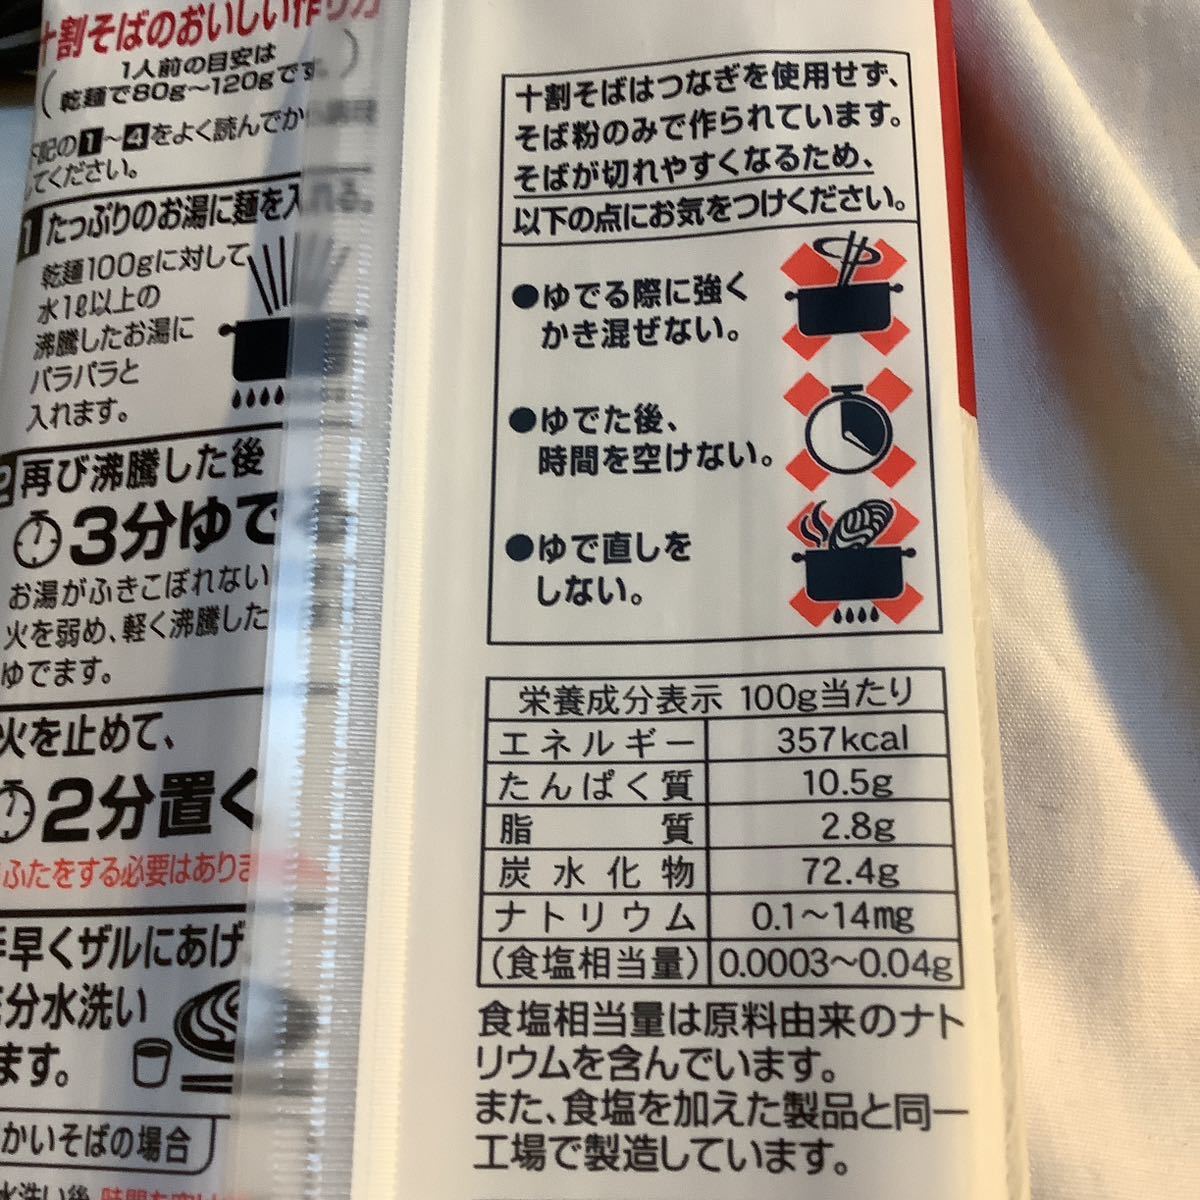  10 сломан соба 200g 2 пакет скупка исключая 500 иен супер 10% в подарок 1~8(max) лот ( оплата доставки другой иметь ). тест 2025/03 наличие 7( следующий 6/26 скупка ) число много степени сломан дешево пшеница опасно информация раздел 